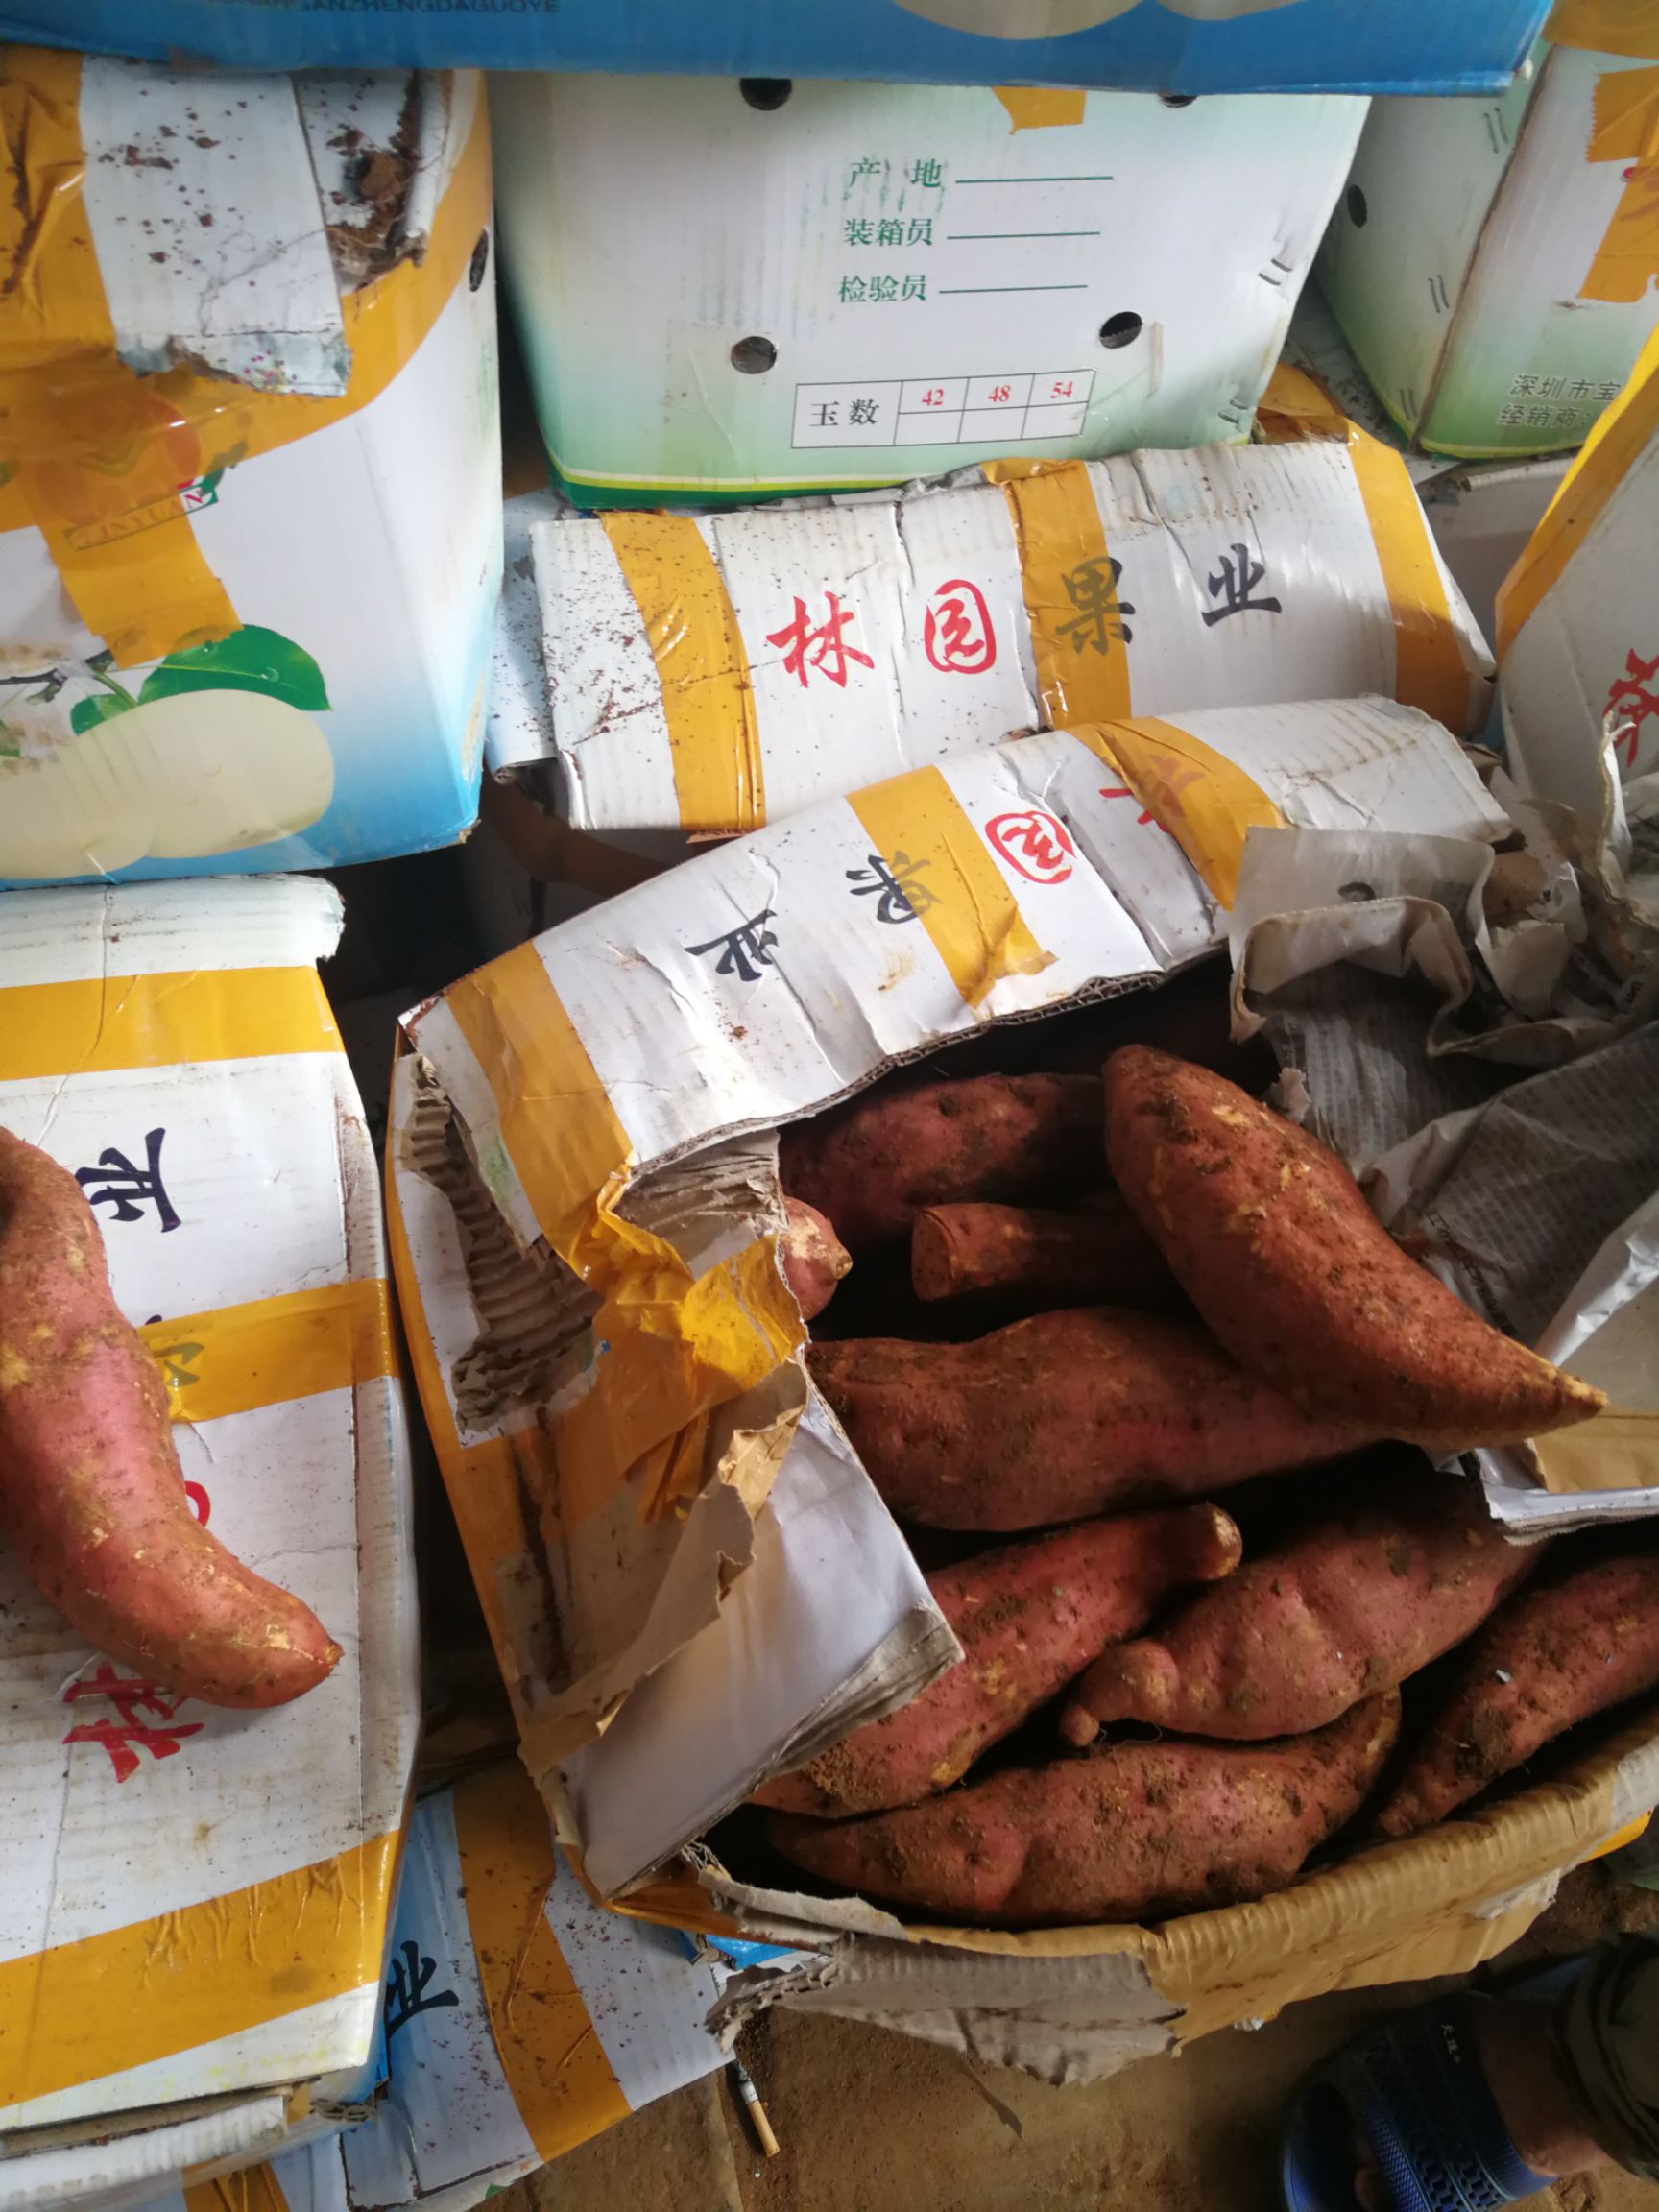 产区,种植基地介绍: 湖北省松滋市八宝镇红薯种植基地位于群星村著名